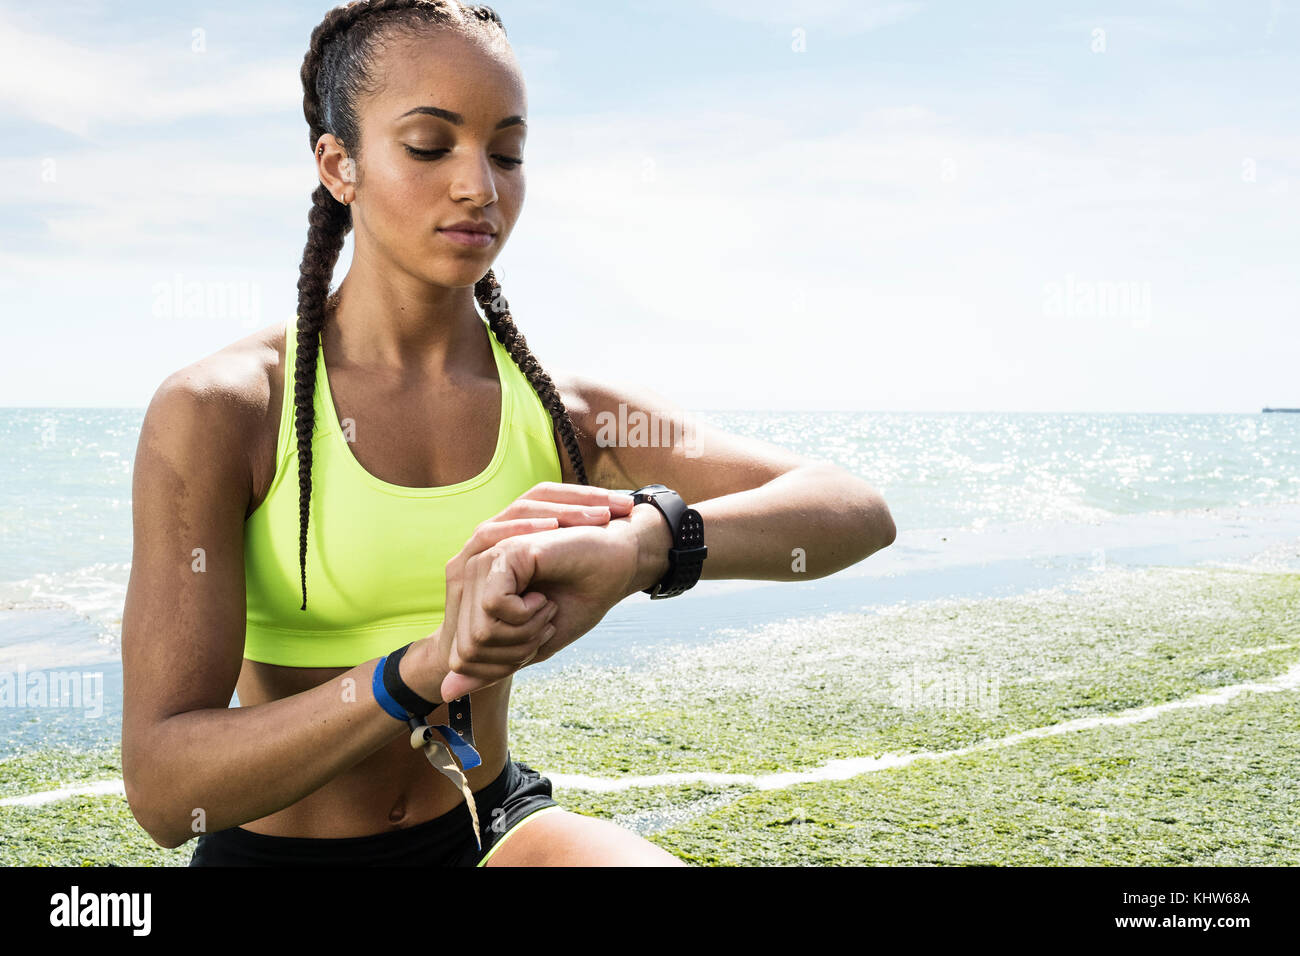 Mujer joven junto al mar, vistiendo ropa deportiva, mirando el rastreador de actividades Foto de stock